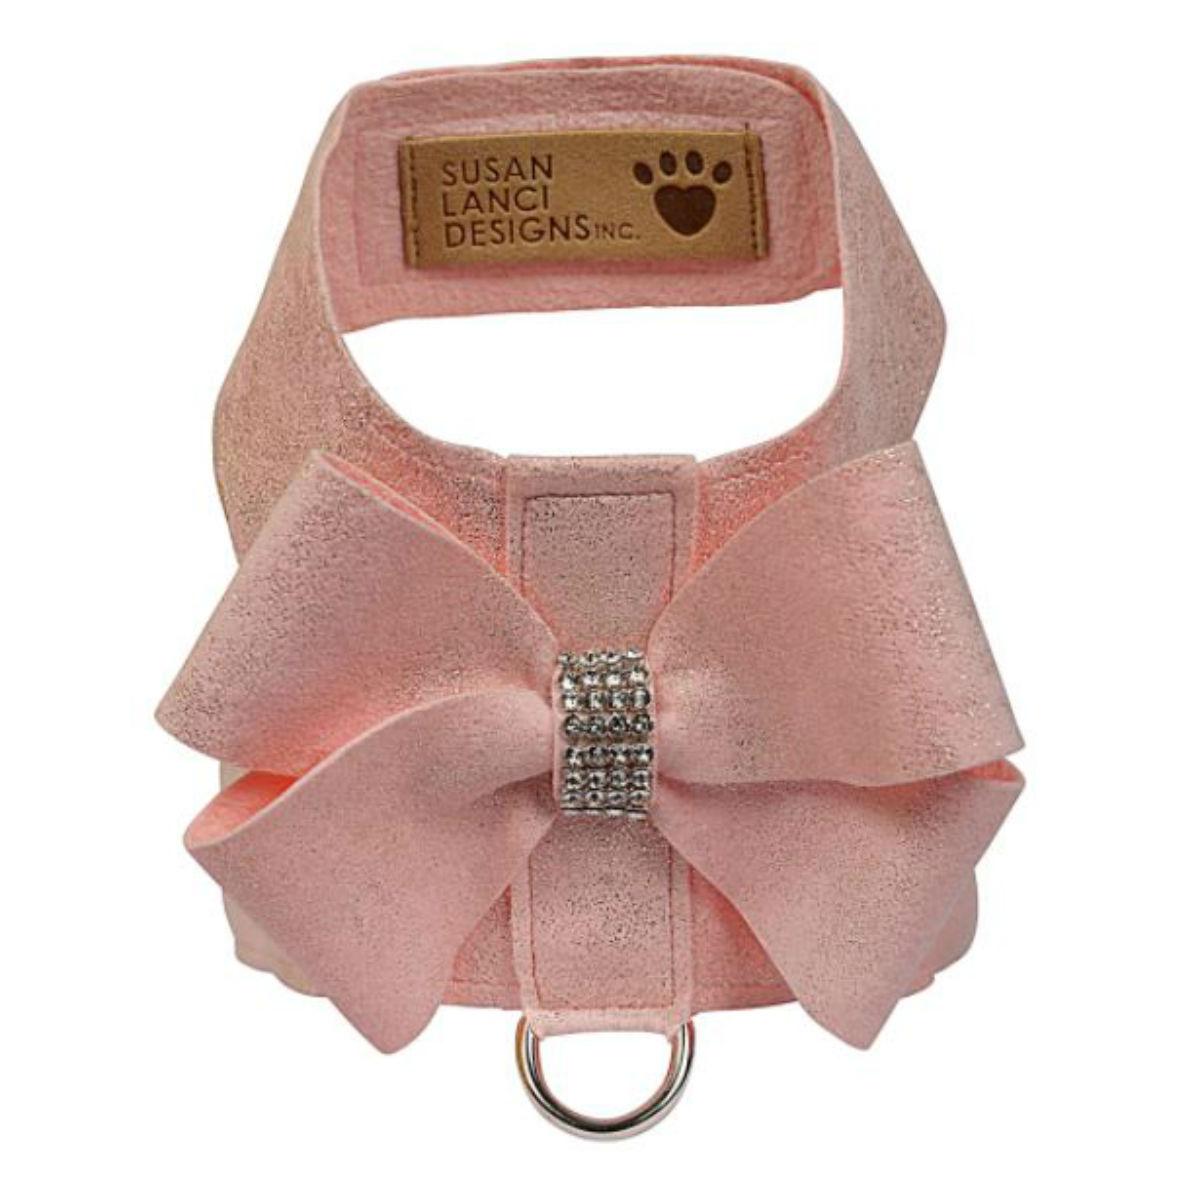 Glitzerati Nouveau Bow Tinkie Dog Harness by Susan Lanci - Puppy Pink